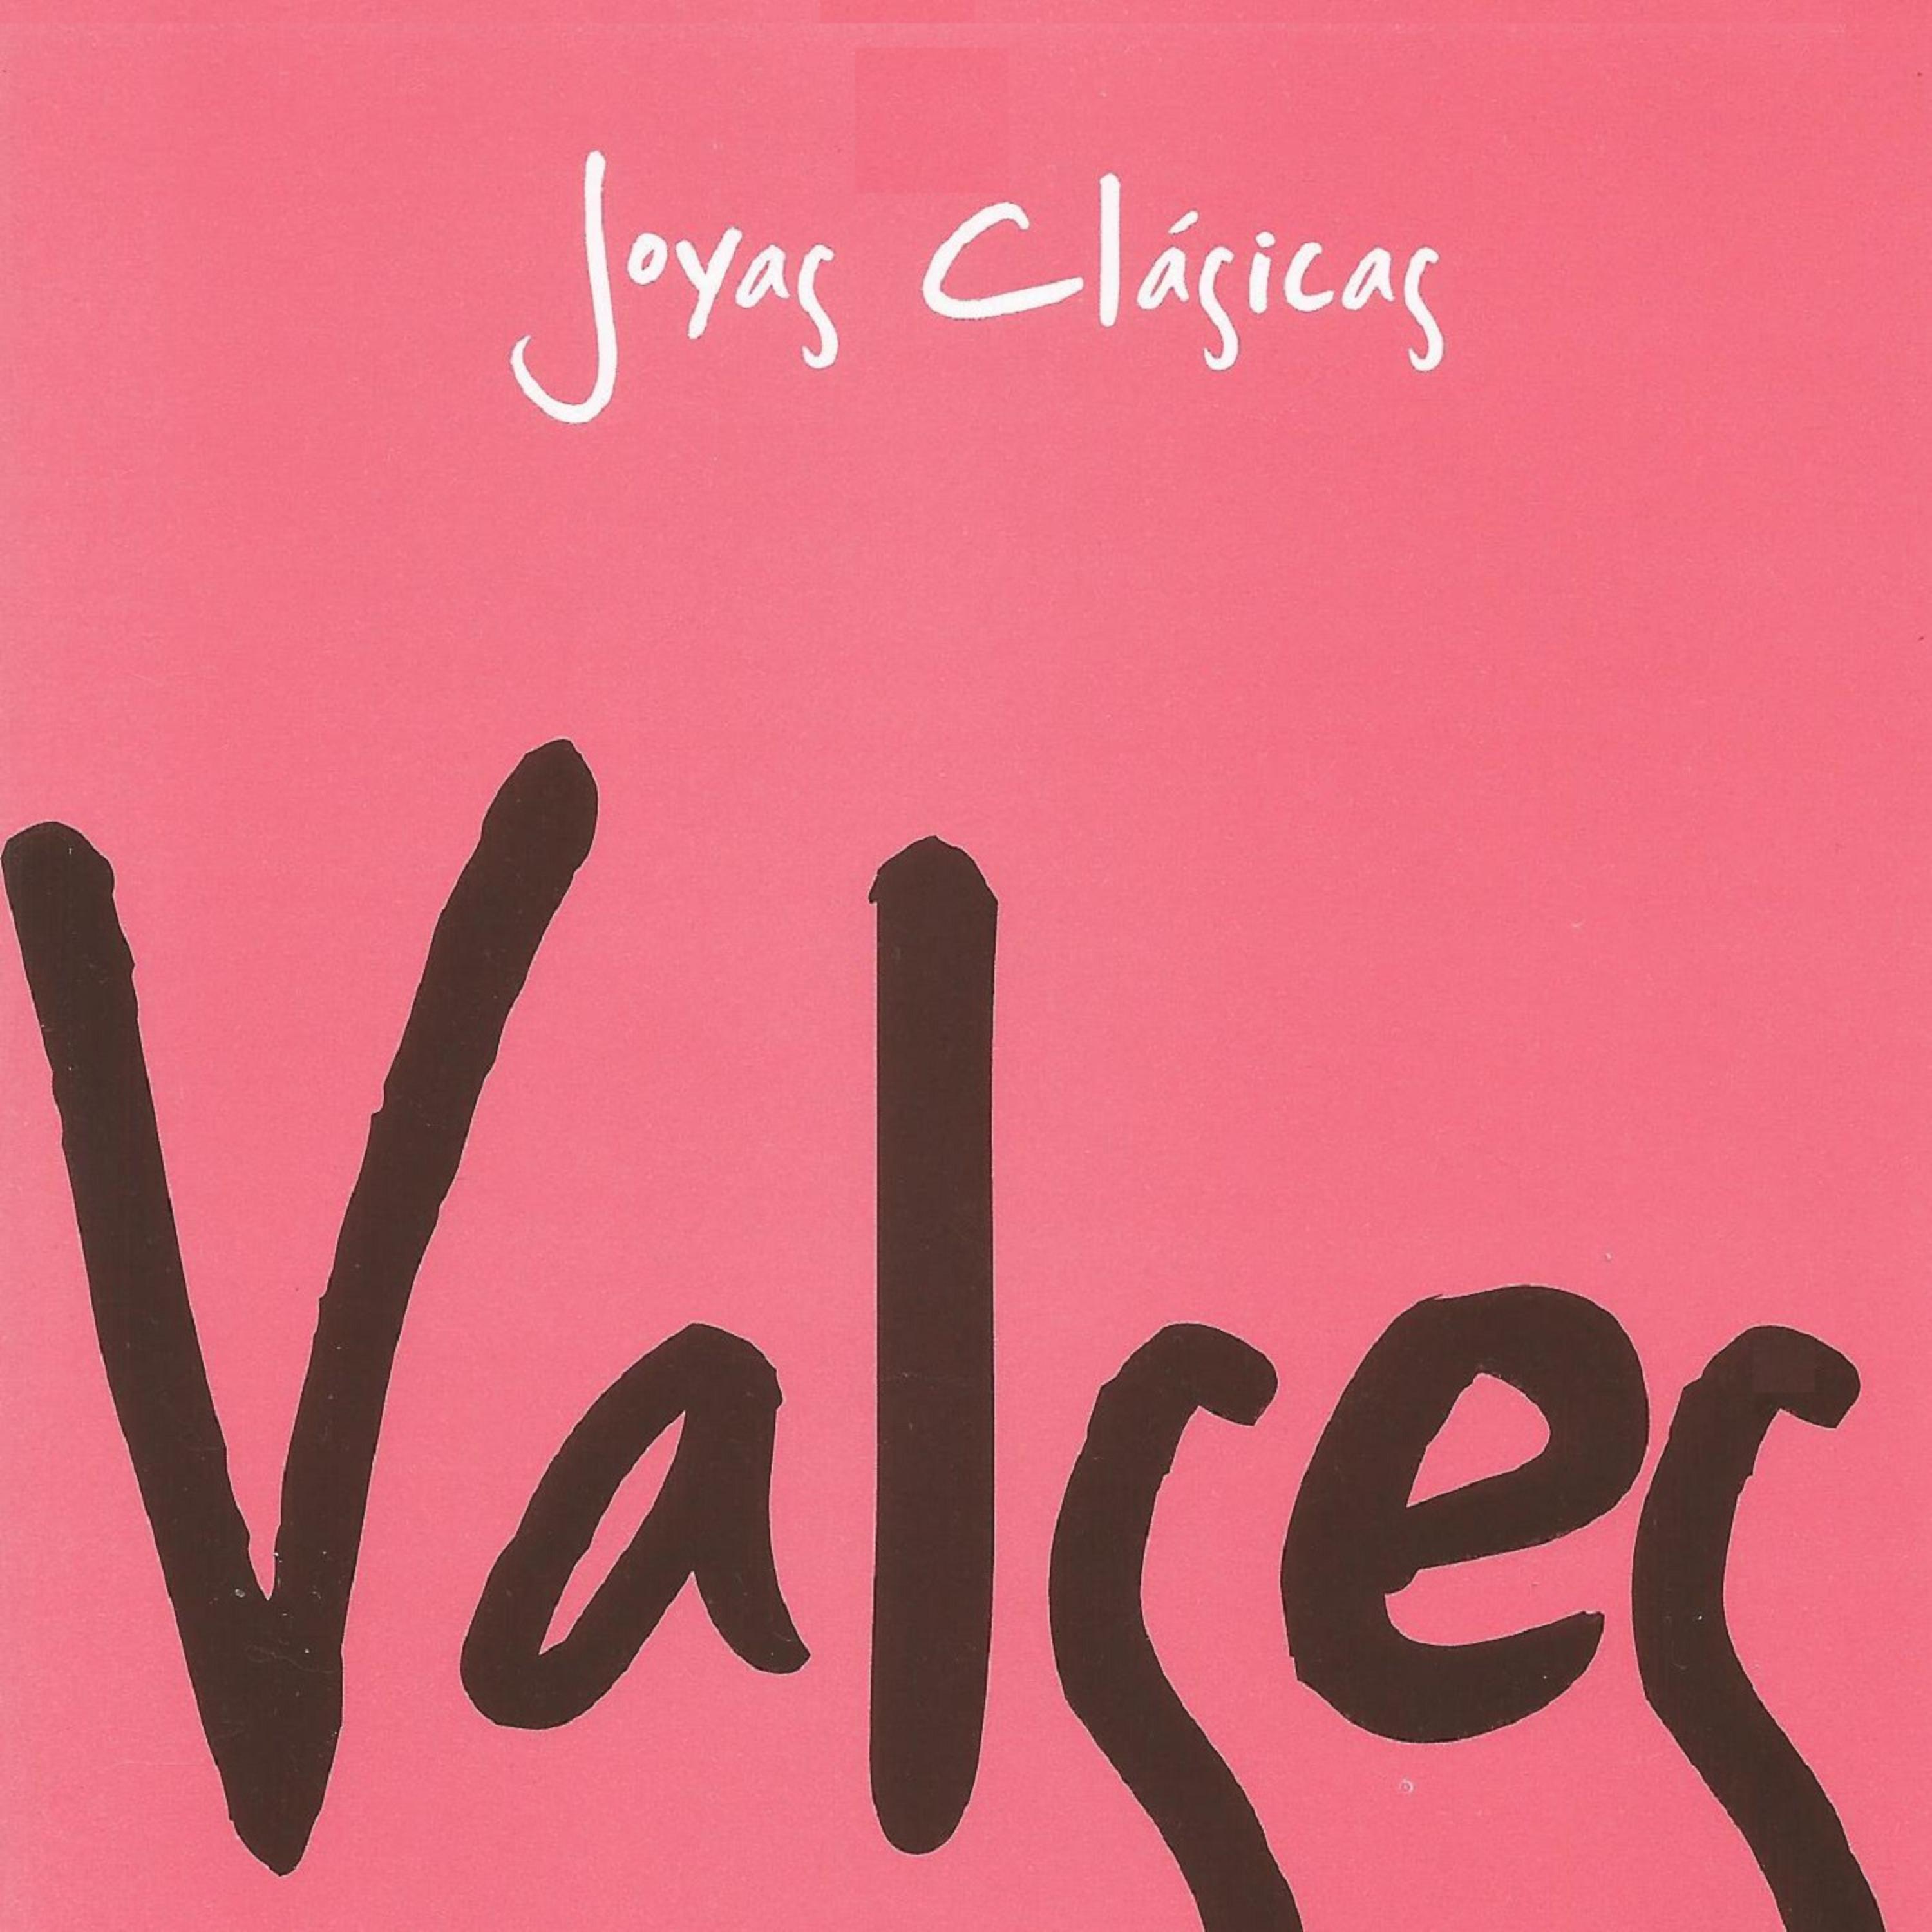 Постер альбома Valses